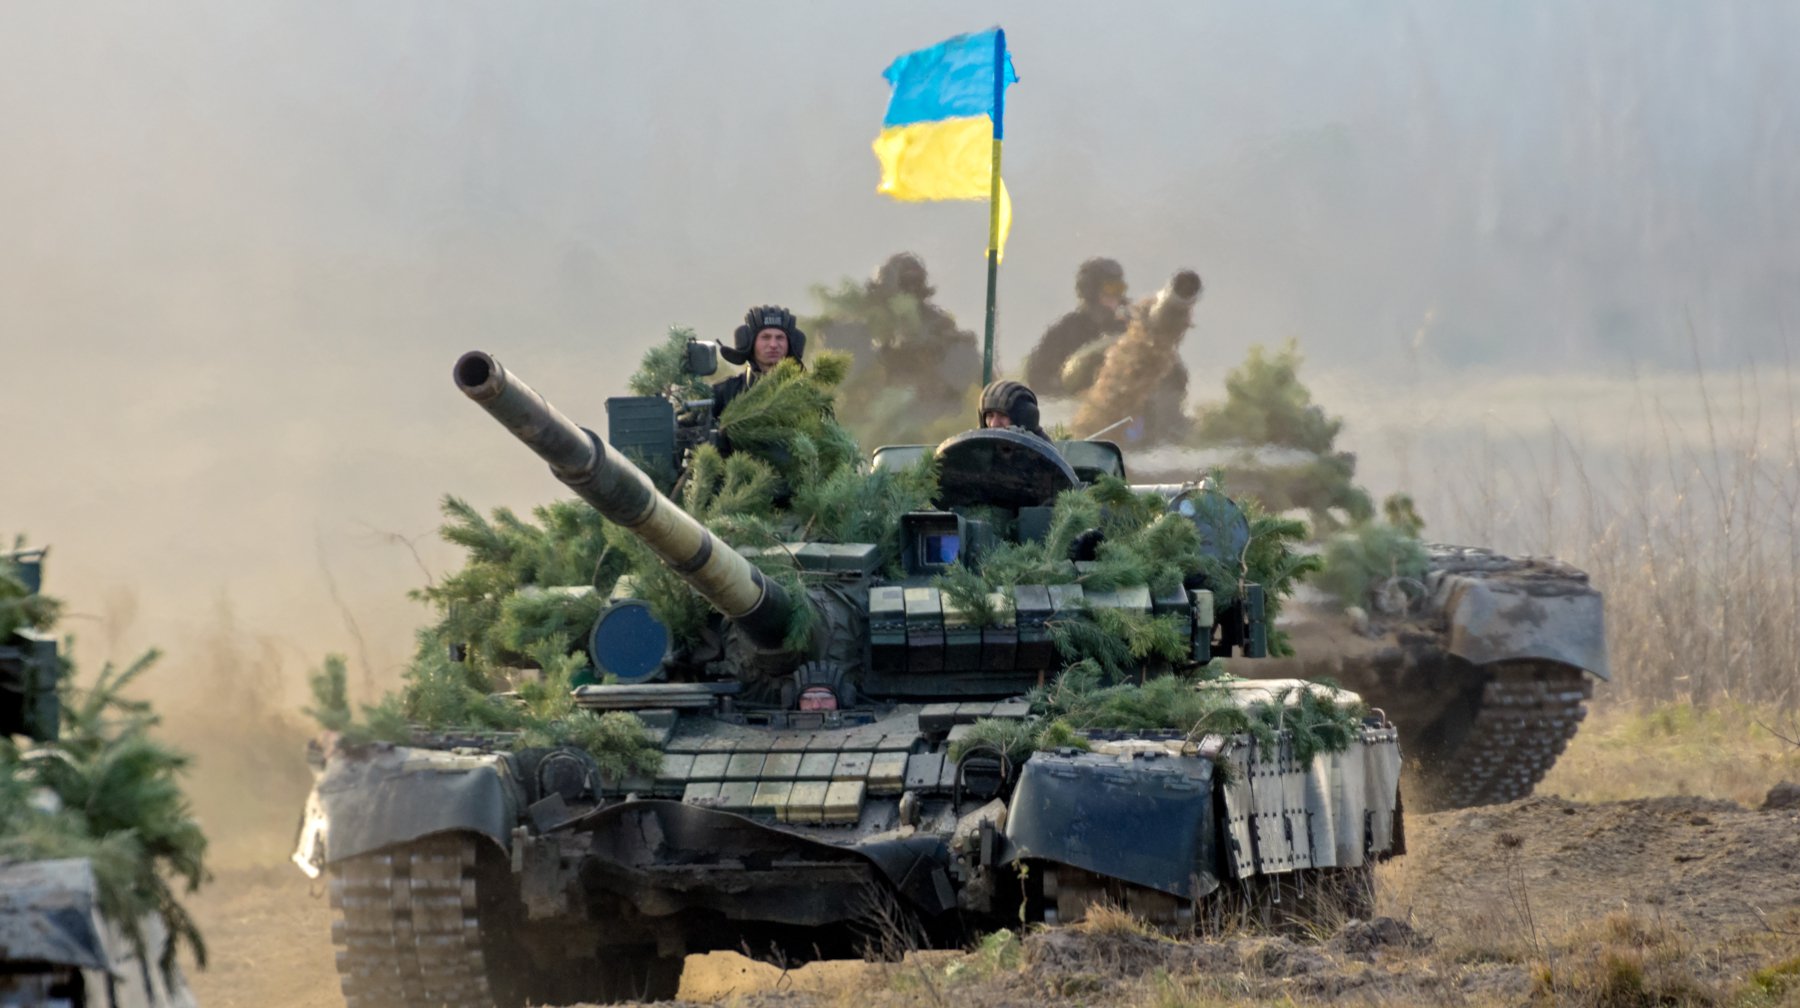 Ουκρανία: Μέσα σε μια εβδομάδα έχει ανακαταλάβει εδάφη που οι Ρώσοι κατέλαβαν μέσα σε 5 μήνες